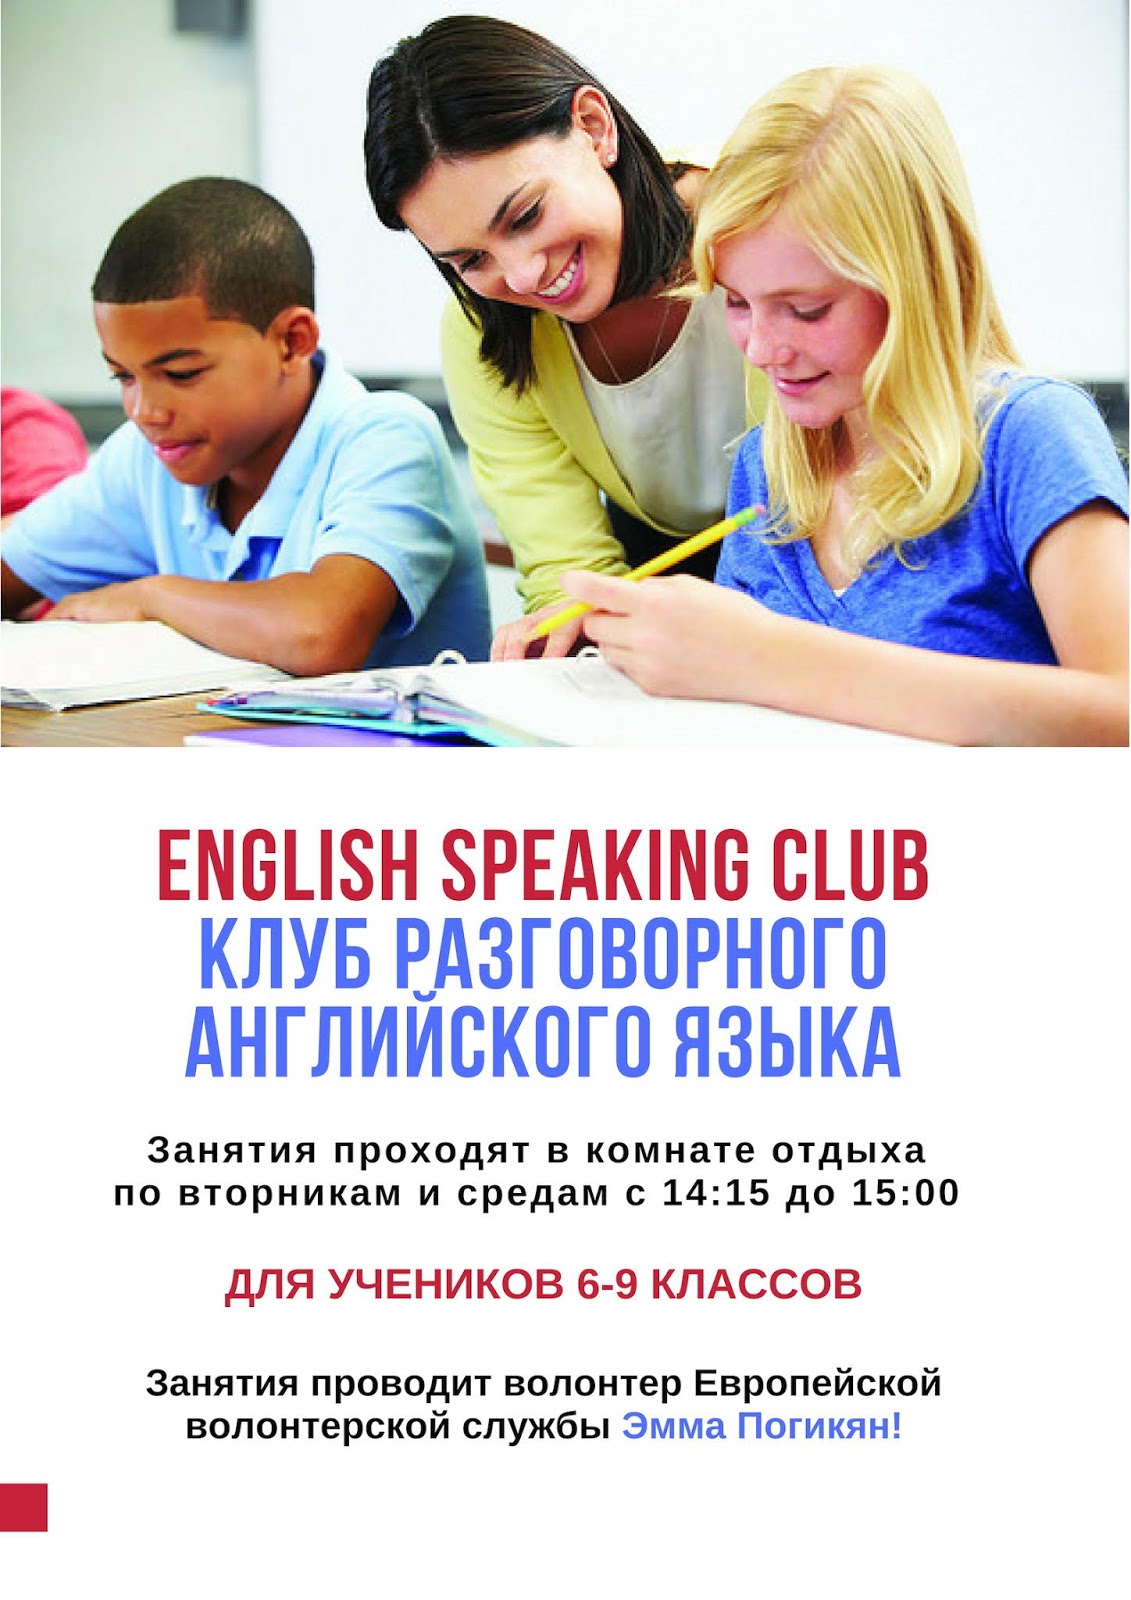 Обучение говорению английский. Разговорный клуб английского языка. Разговорный клуб с носителем языка. Курсы разговорного английского. Английский разговорный клуб для детей.